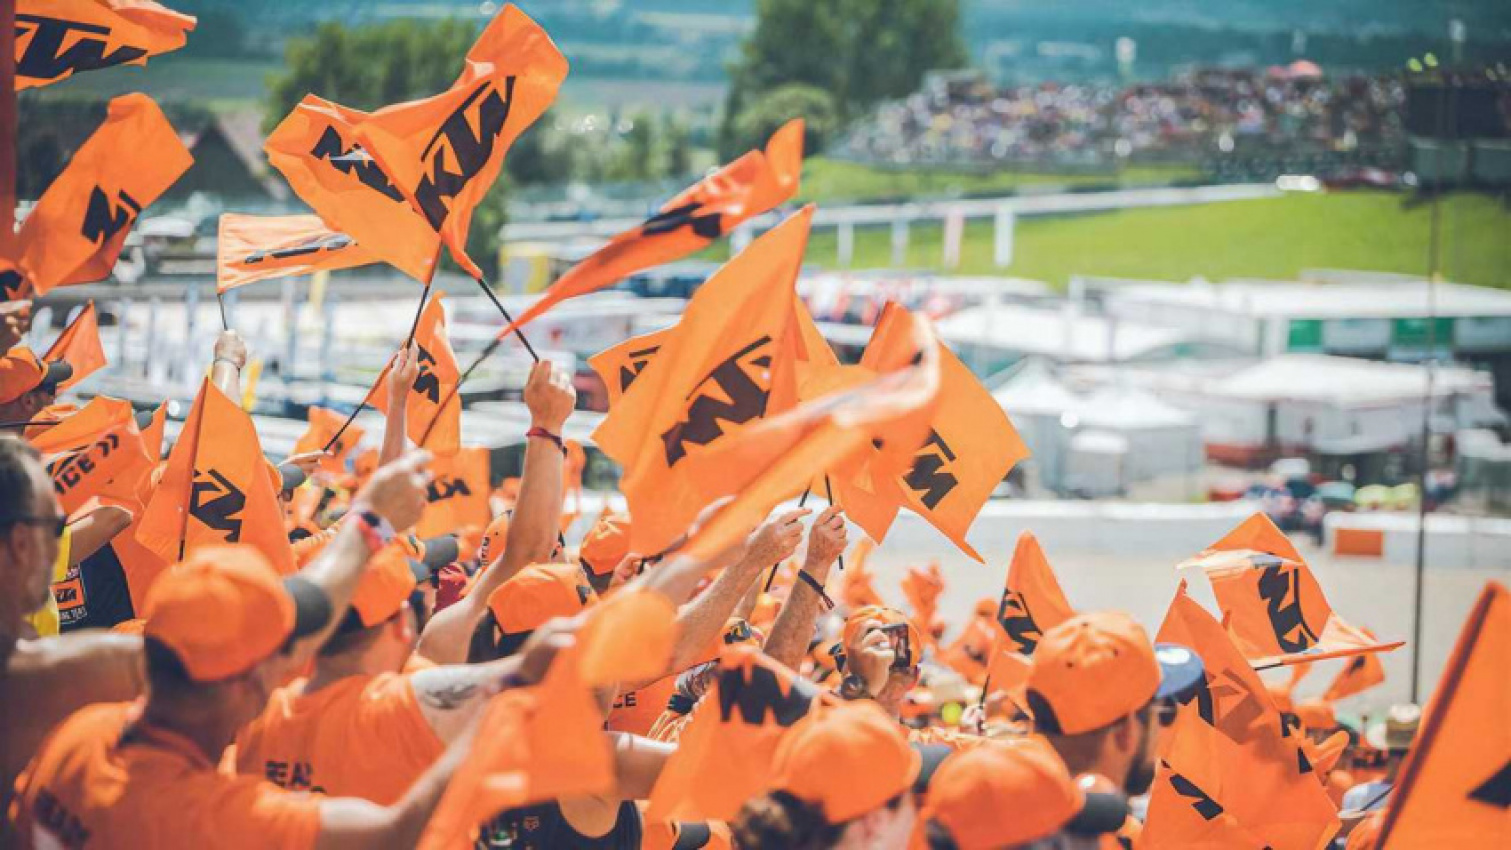 autos, cars, ktm, ktm announces ultimate orange experience plans for motogp 2022 season